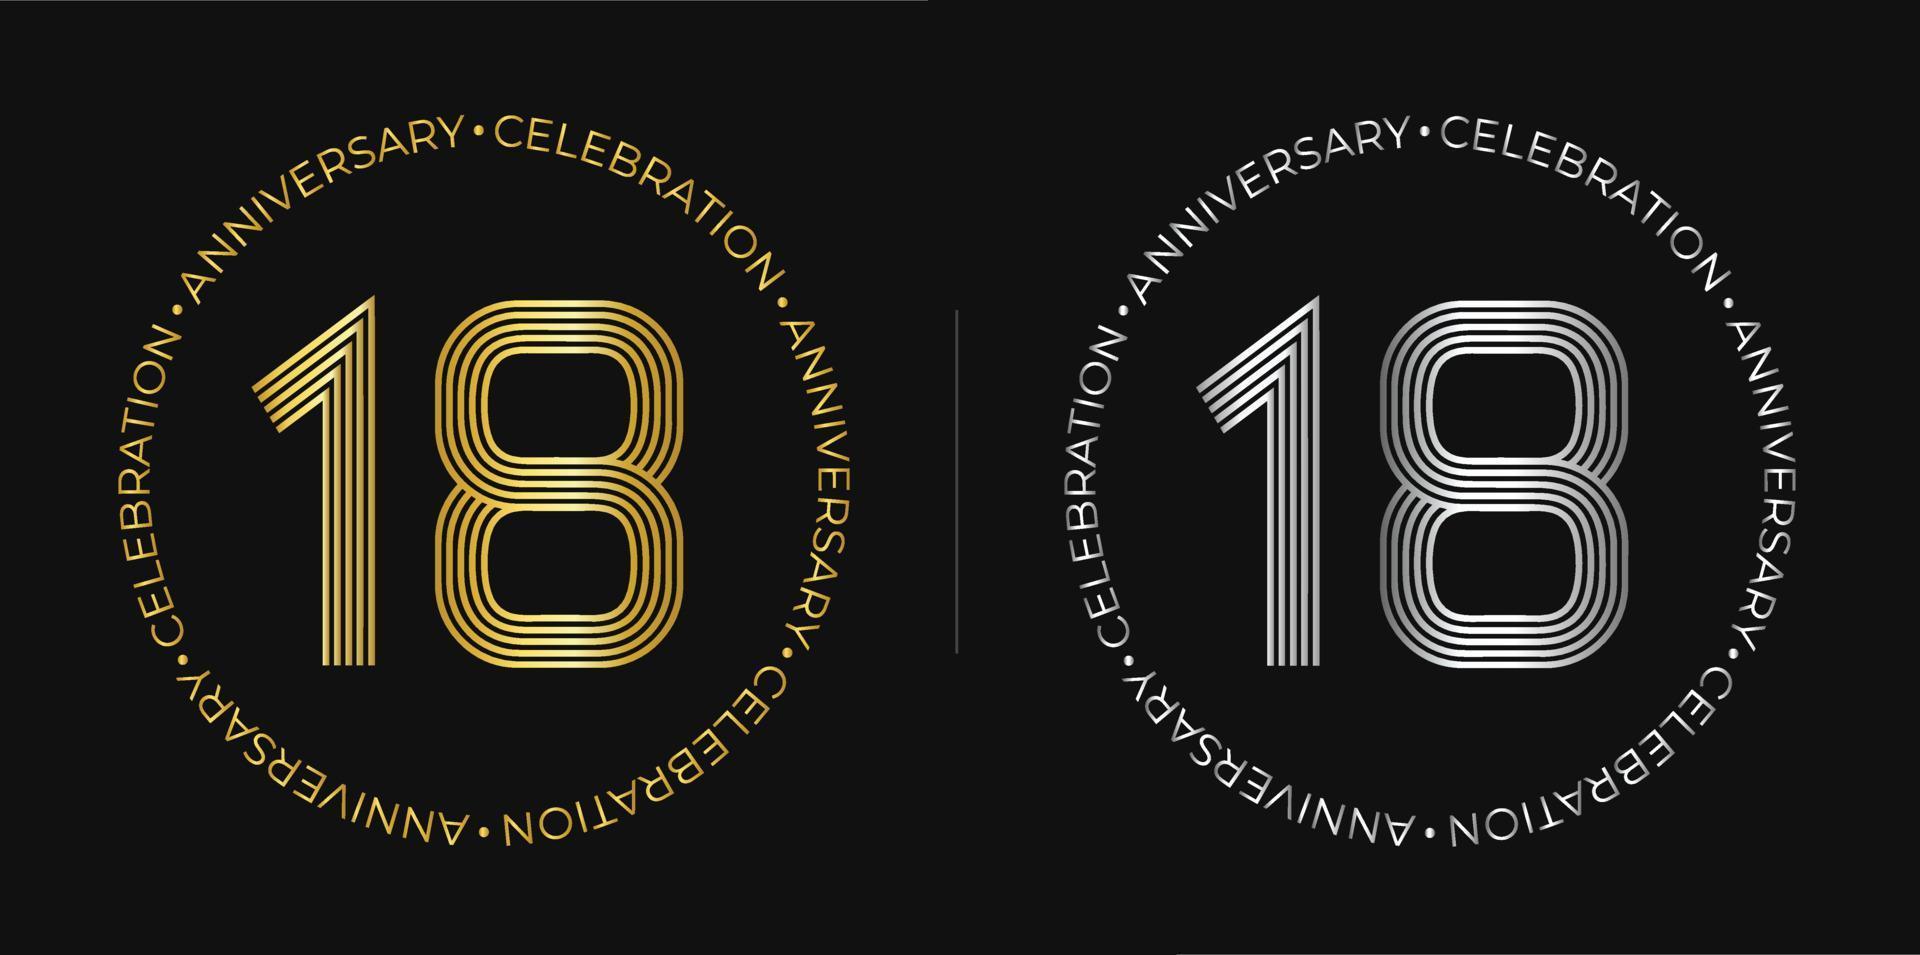 18 cumpleaños Banner de celebración de aniversario de dieciocho años en colores dorado y plateado. logo circular con diseño de números originales en líneas elegantes. vector